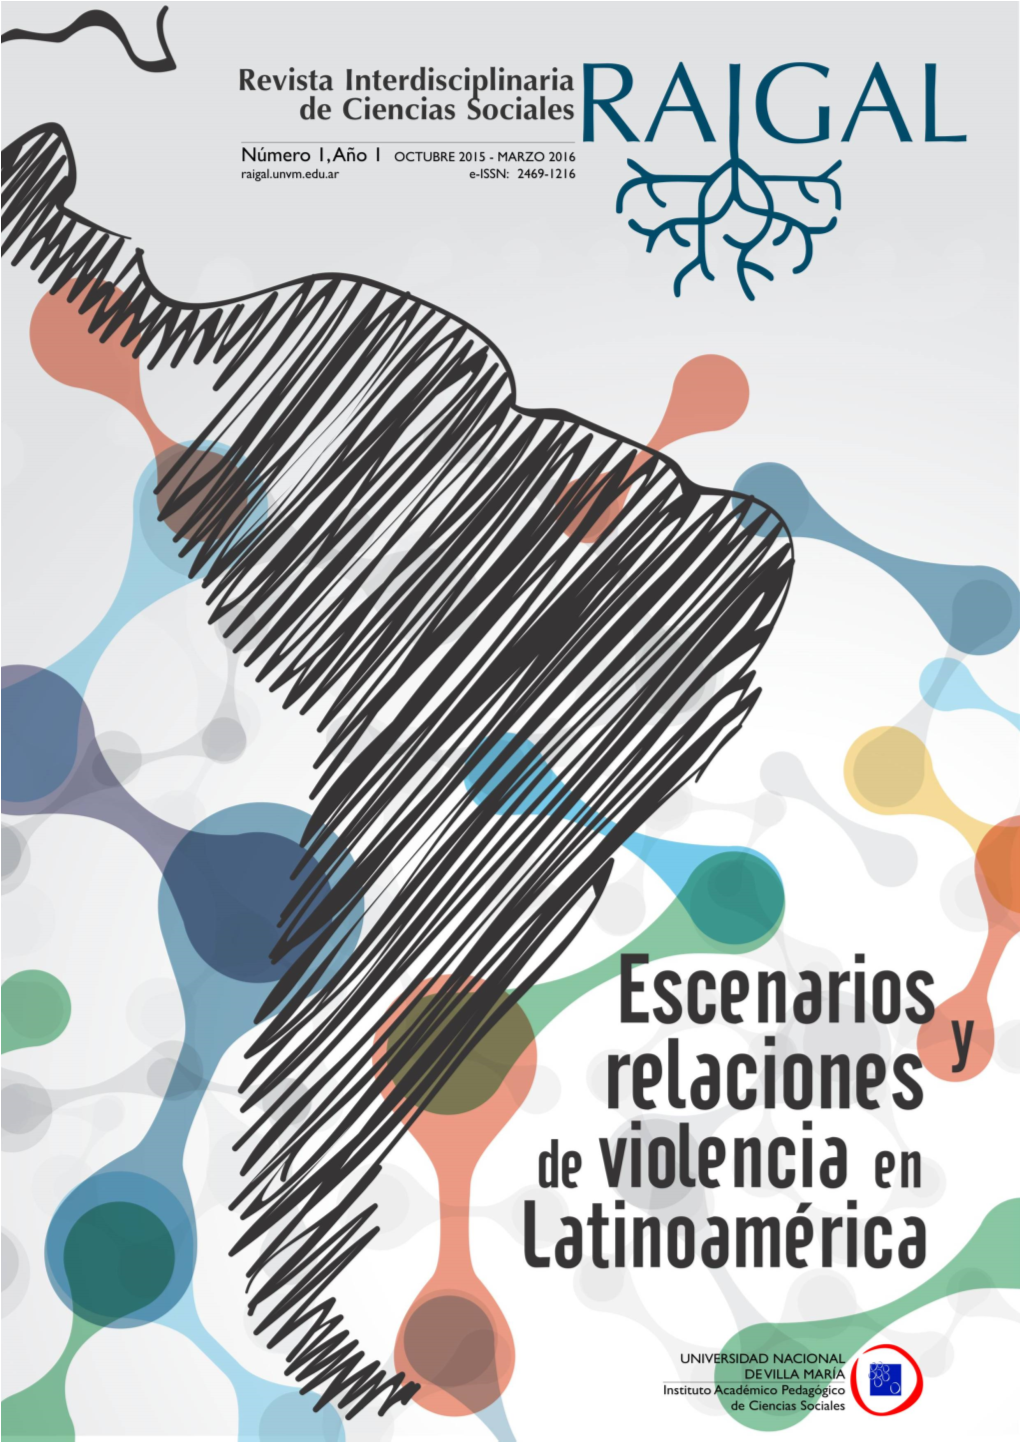 Escenarios Y Relaciones De Violencia En Latinoamérica”